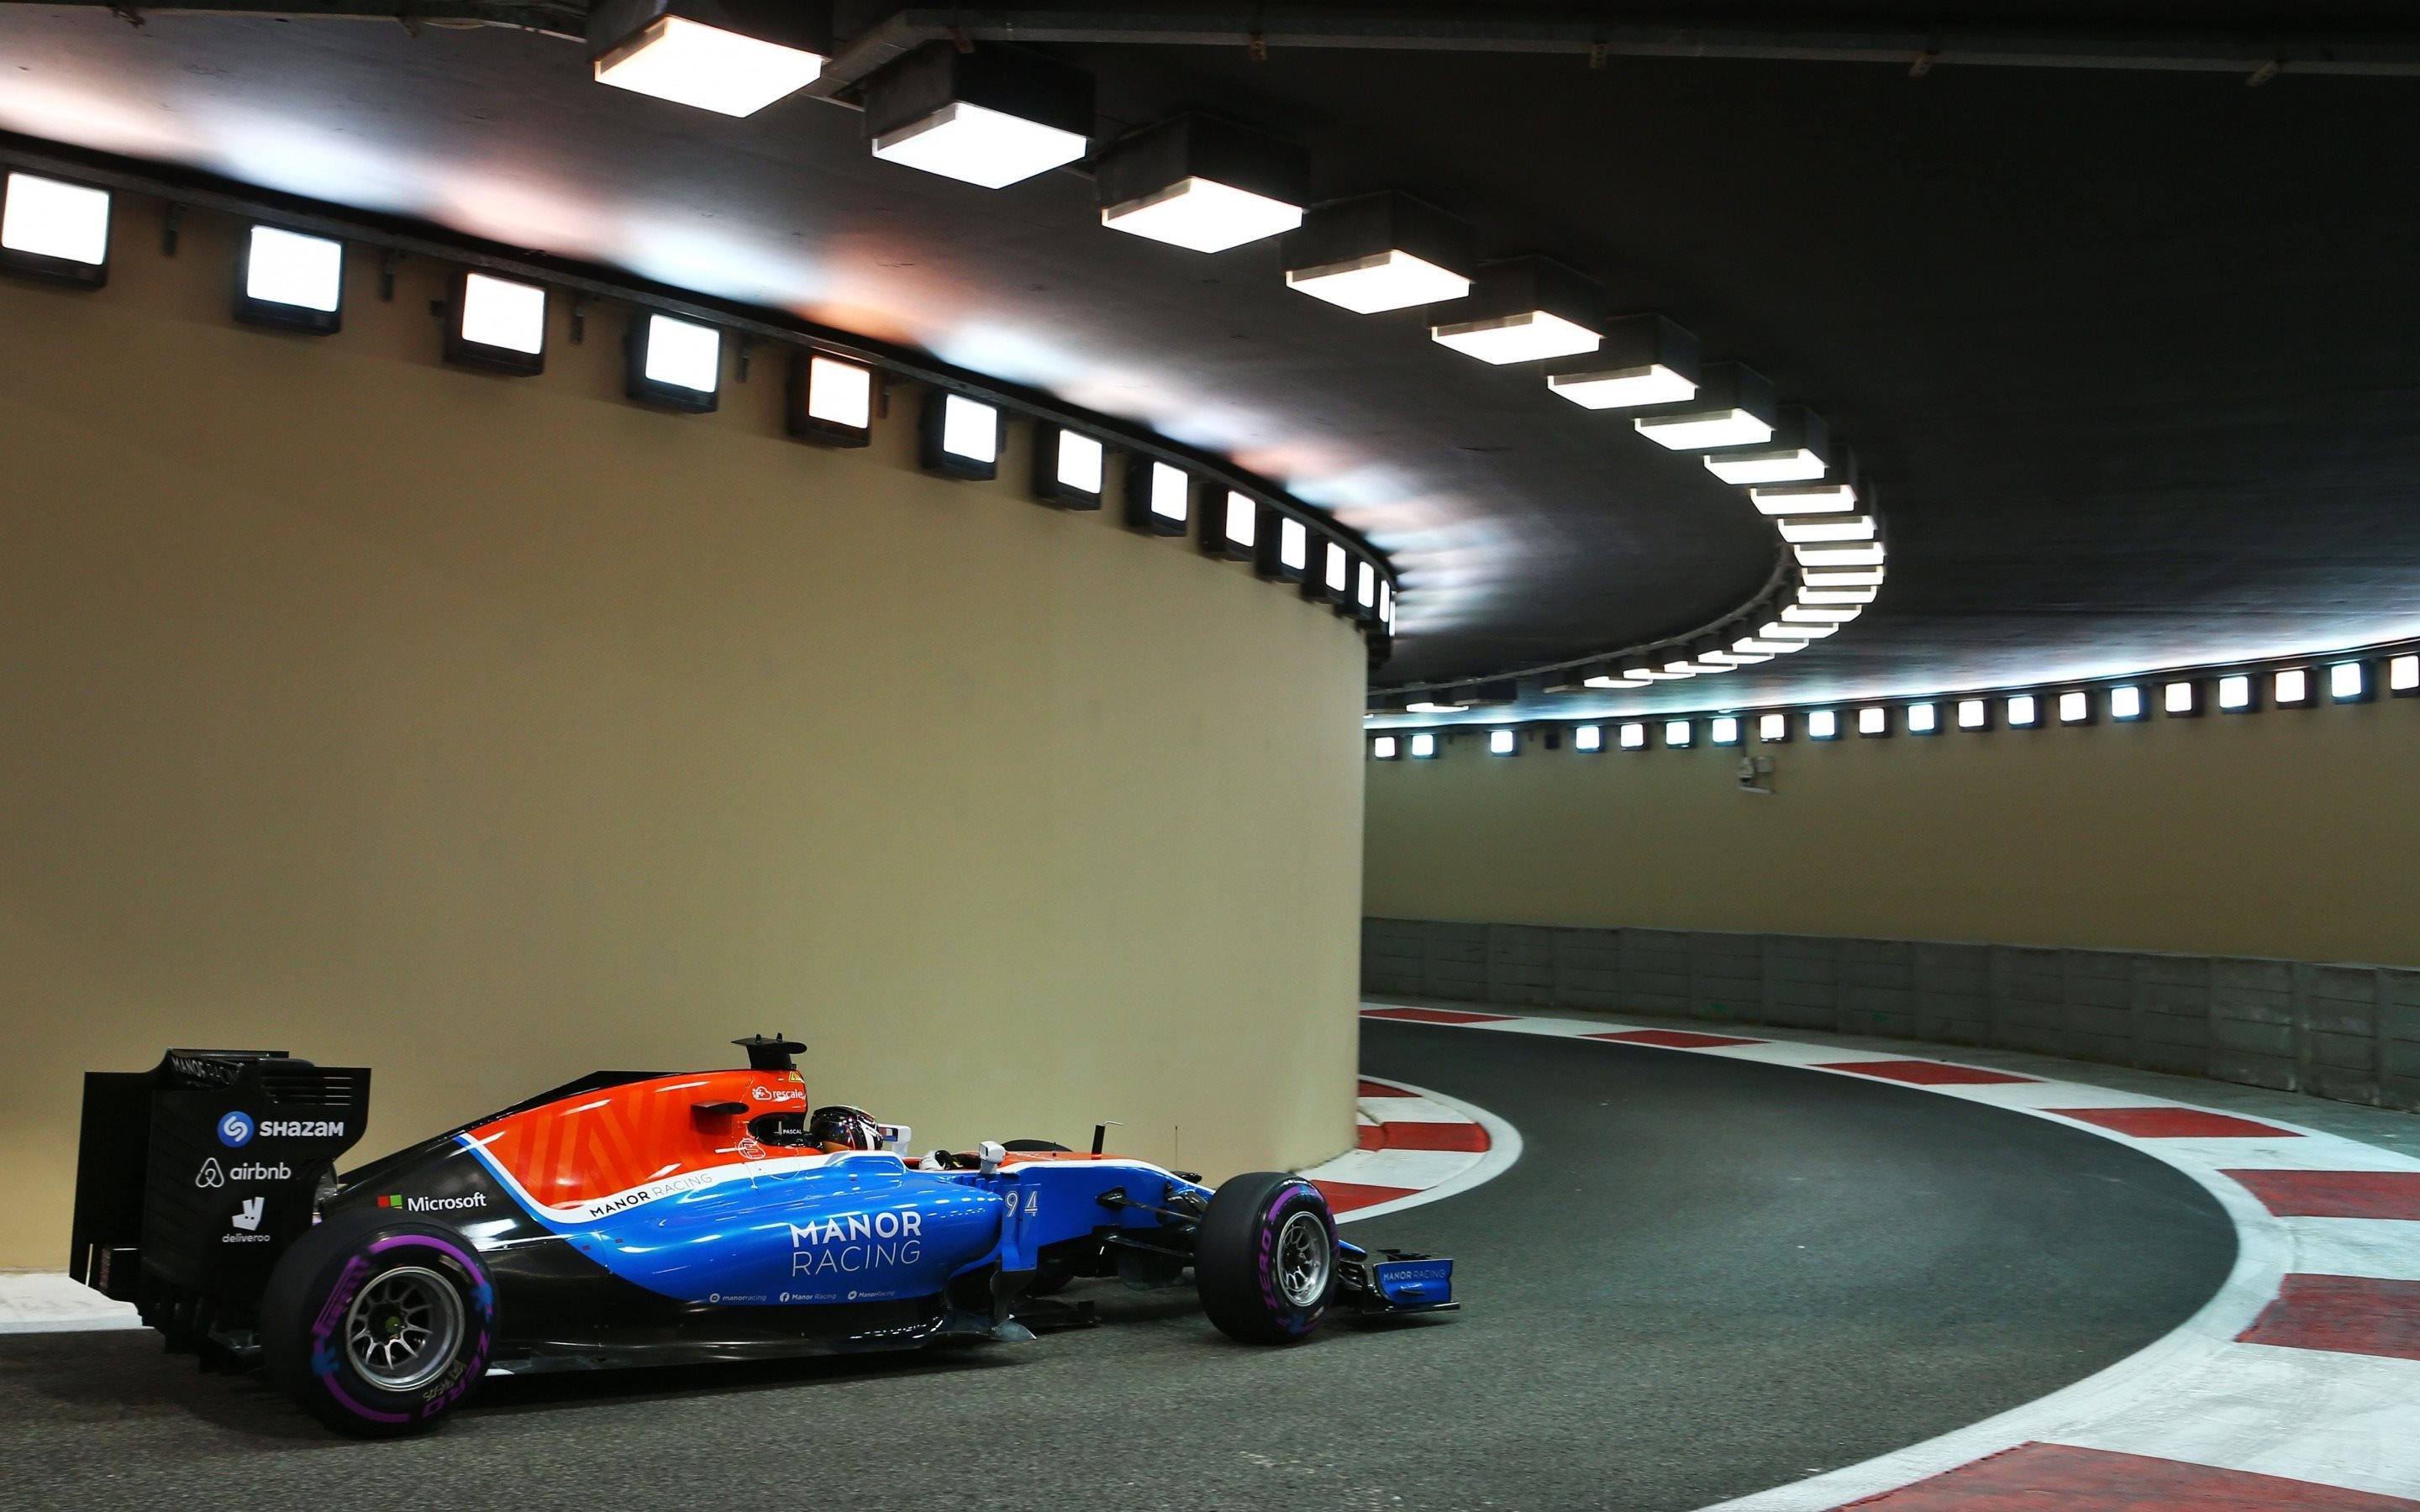 Formula 1, Pascal Wehrlein, Manor Motorsport, Dubai - Abu Dhabi Pit Lane , HD Wallpaper & Backgrounds